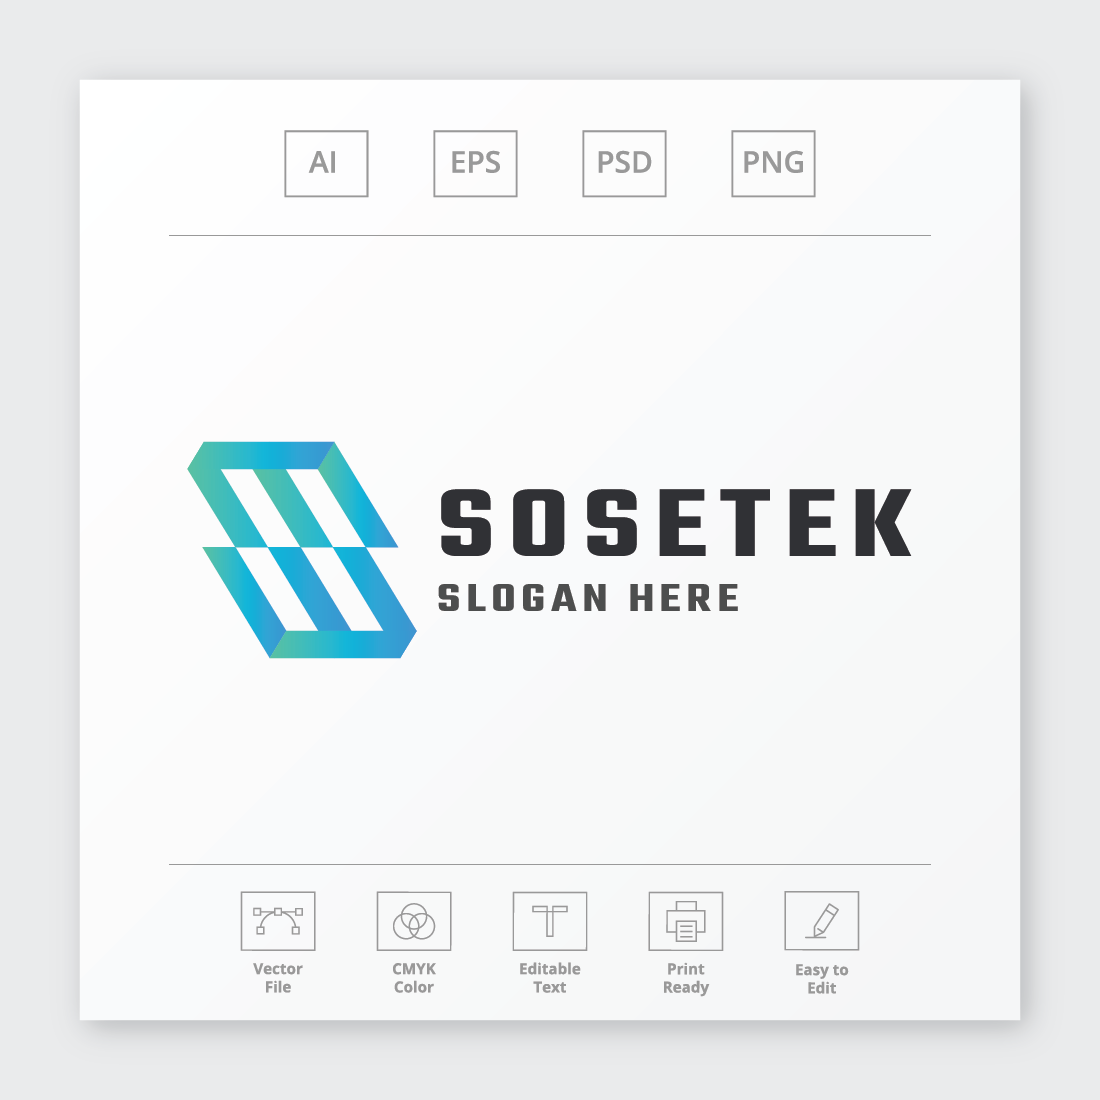 Sosetek Letter S Logo cover image.